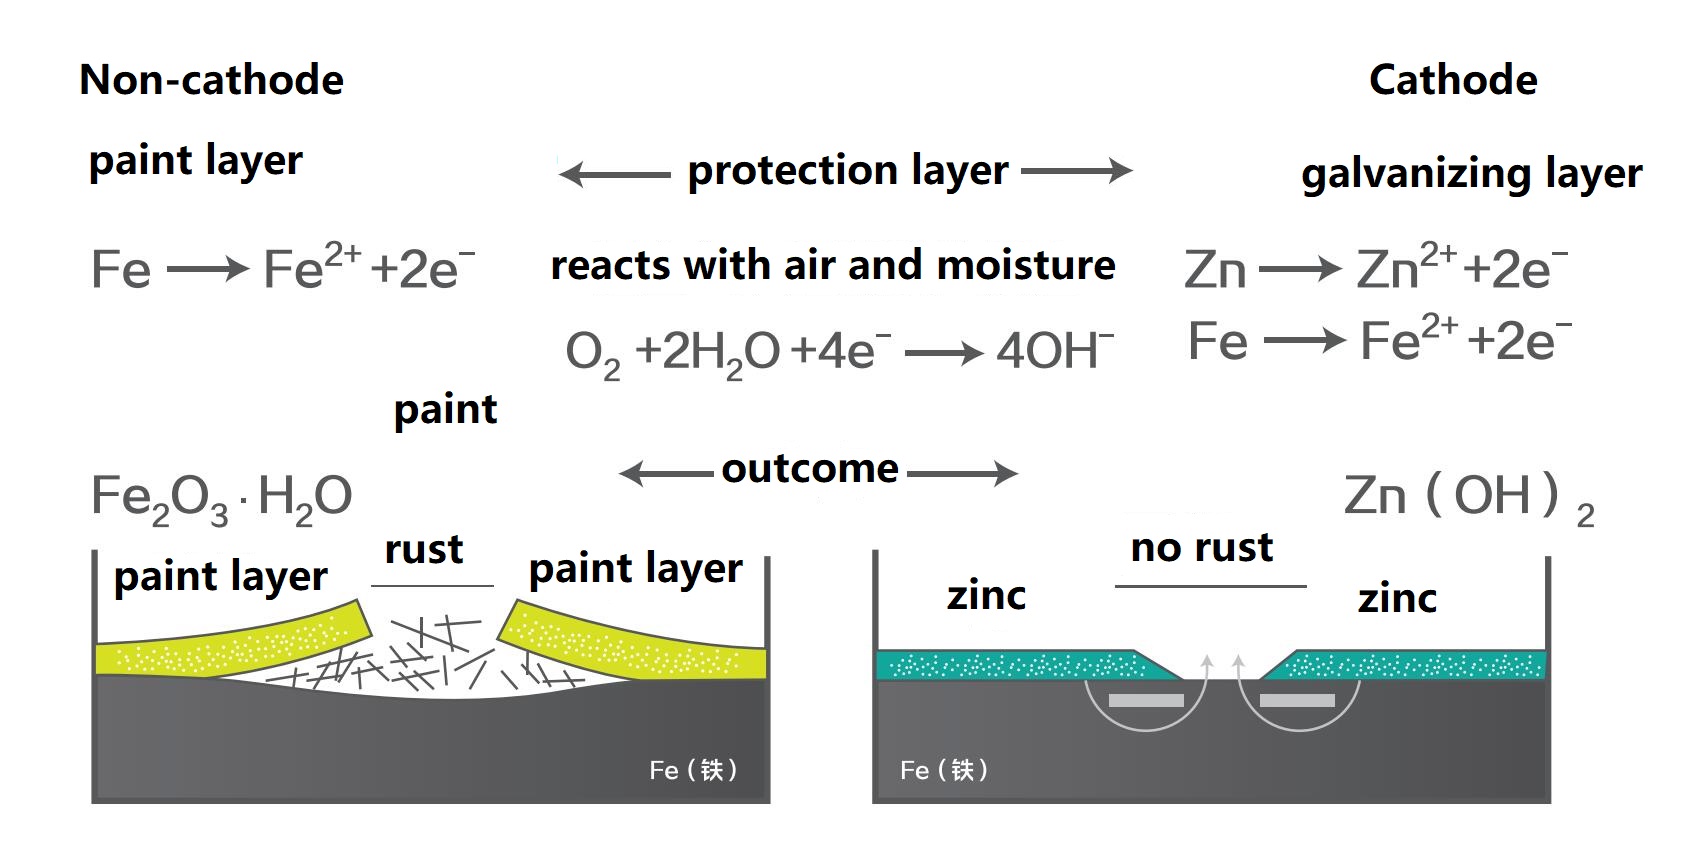 Un pacchettu unicu chì cuntene 96% di zincu in film seccu, una prestazione anti-corrosione alternativa à l'immersione calda